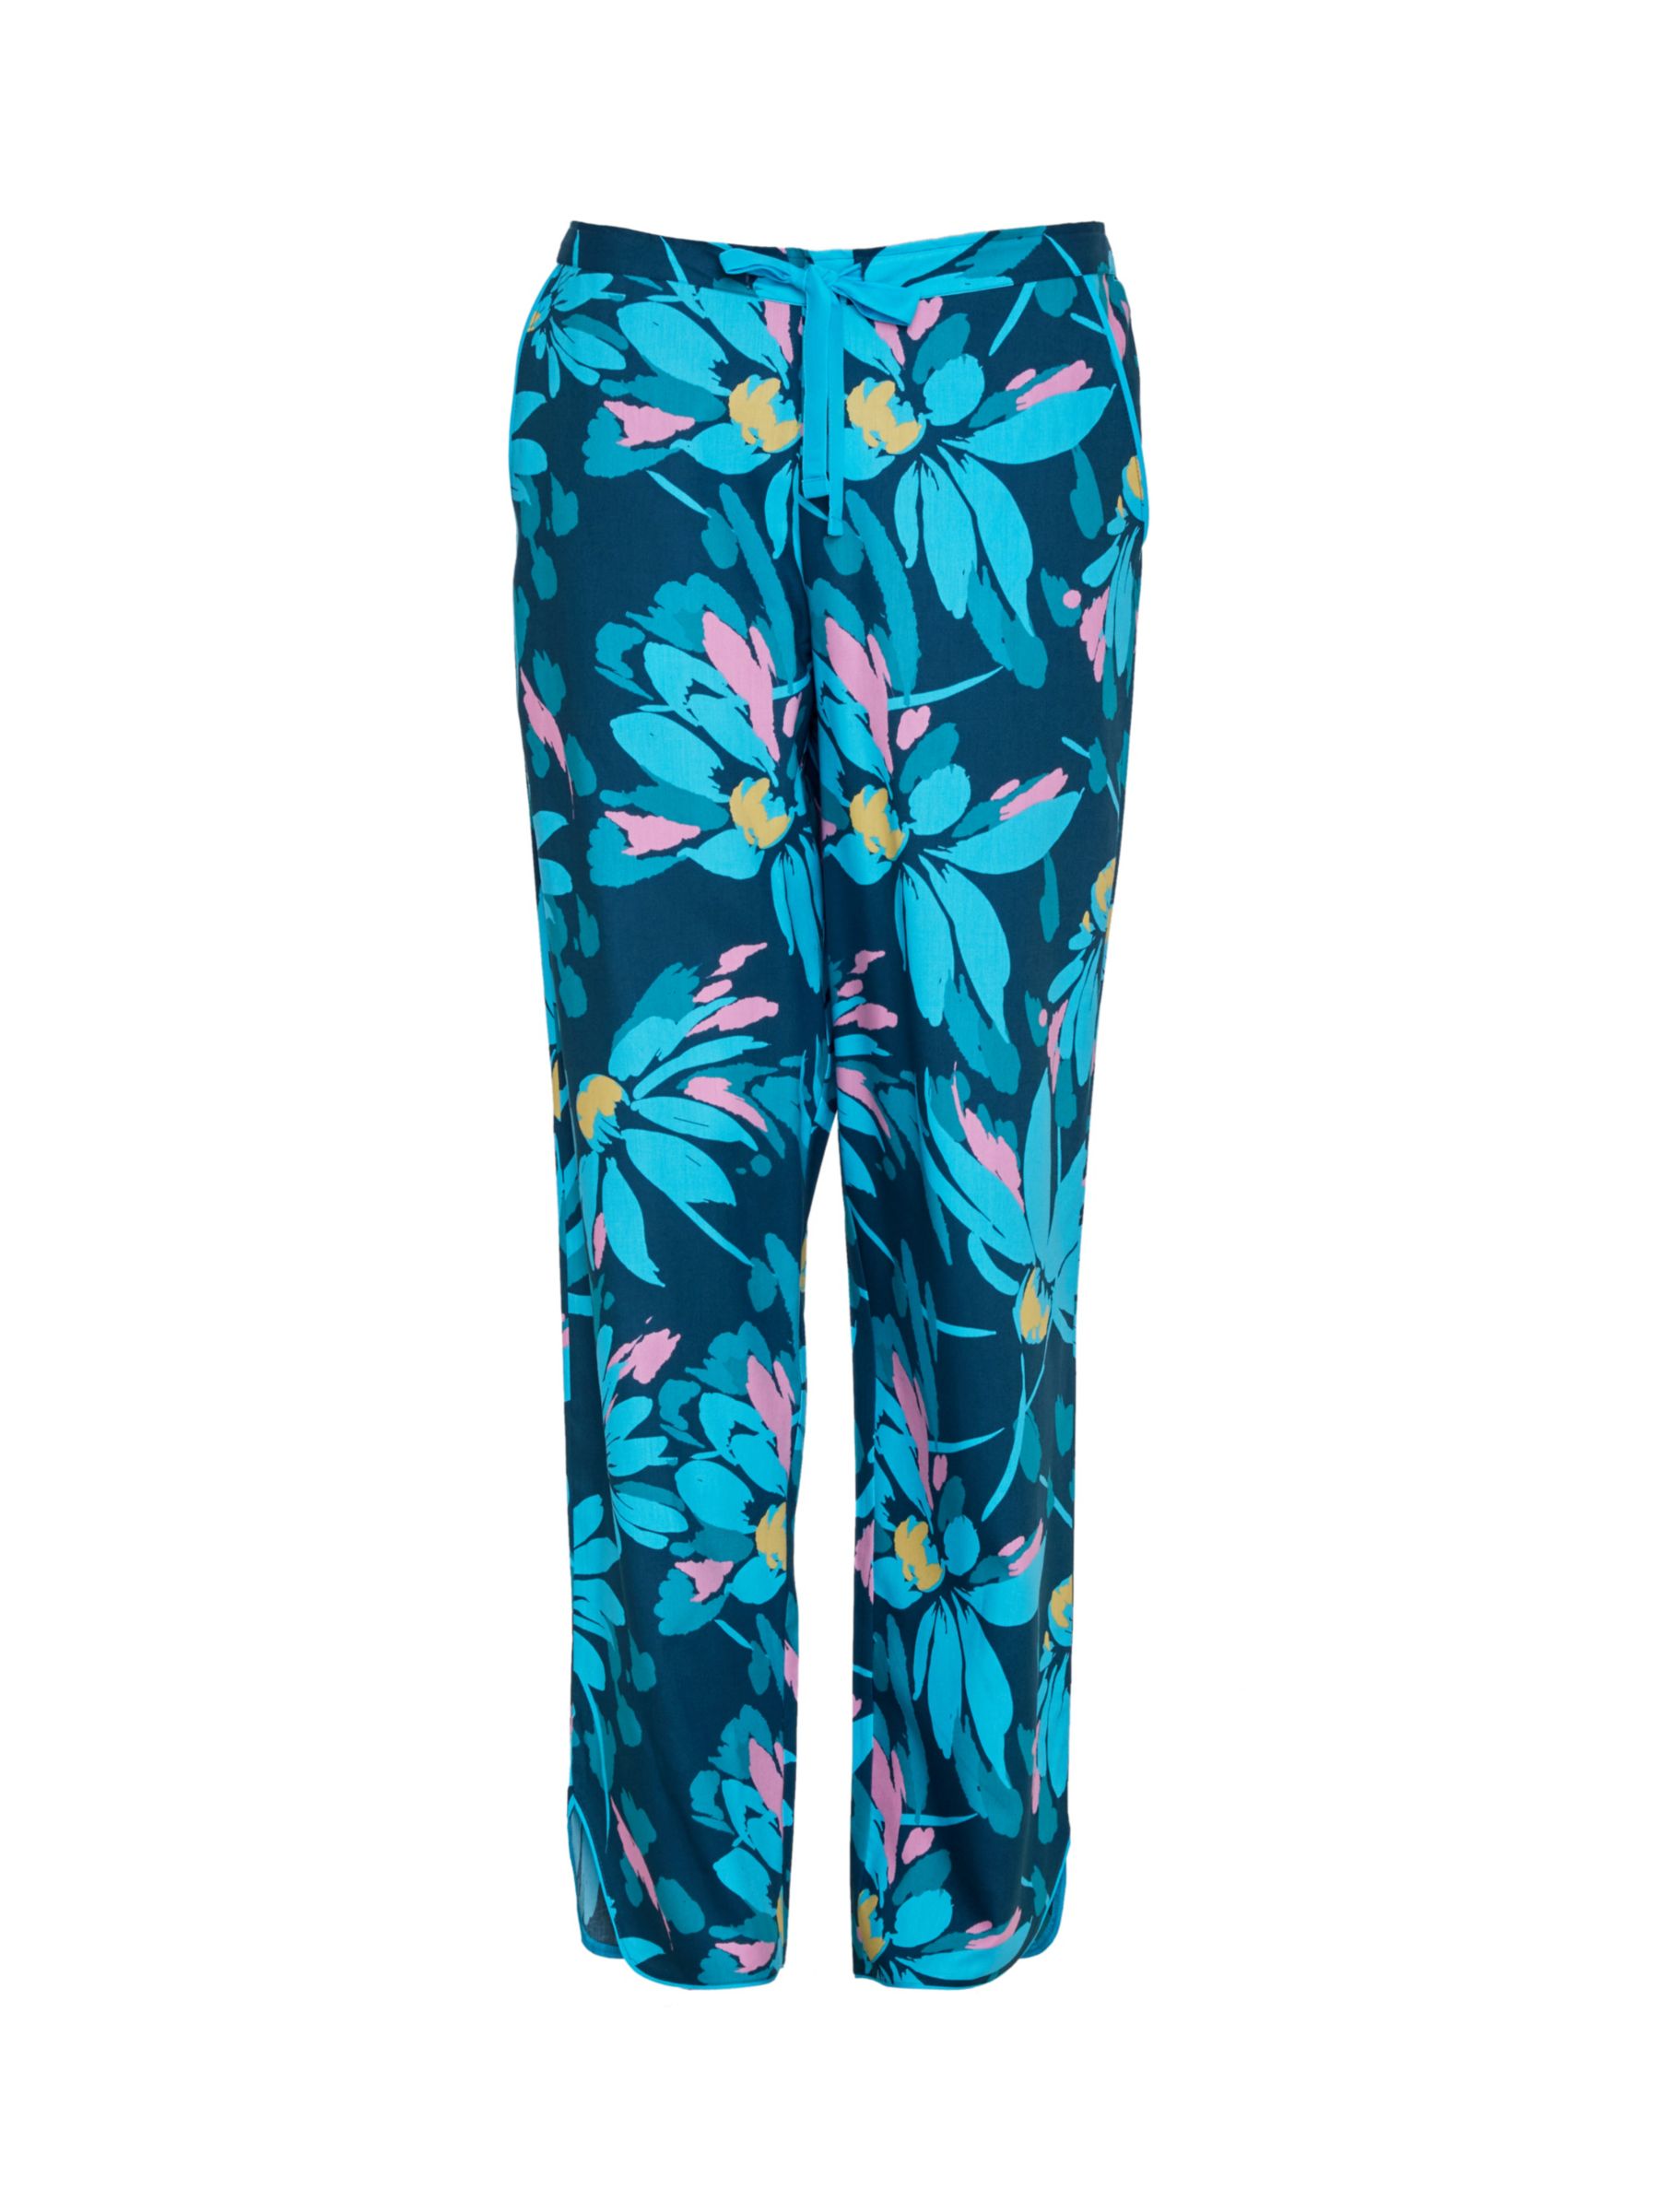 Cyberjammies Cove Floral Print Pyjama Bottoms, Teal/Multi, 28